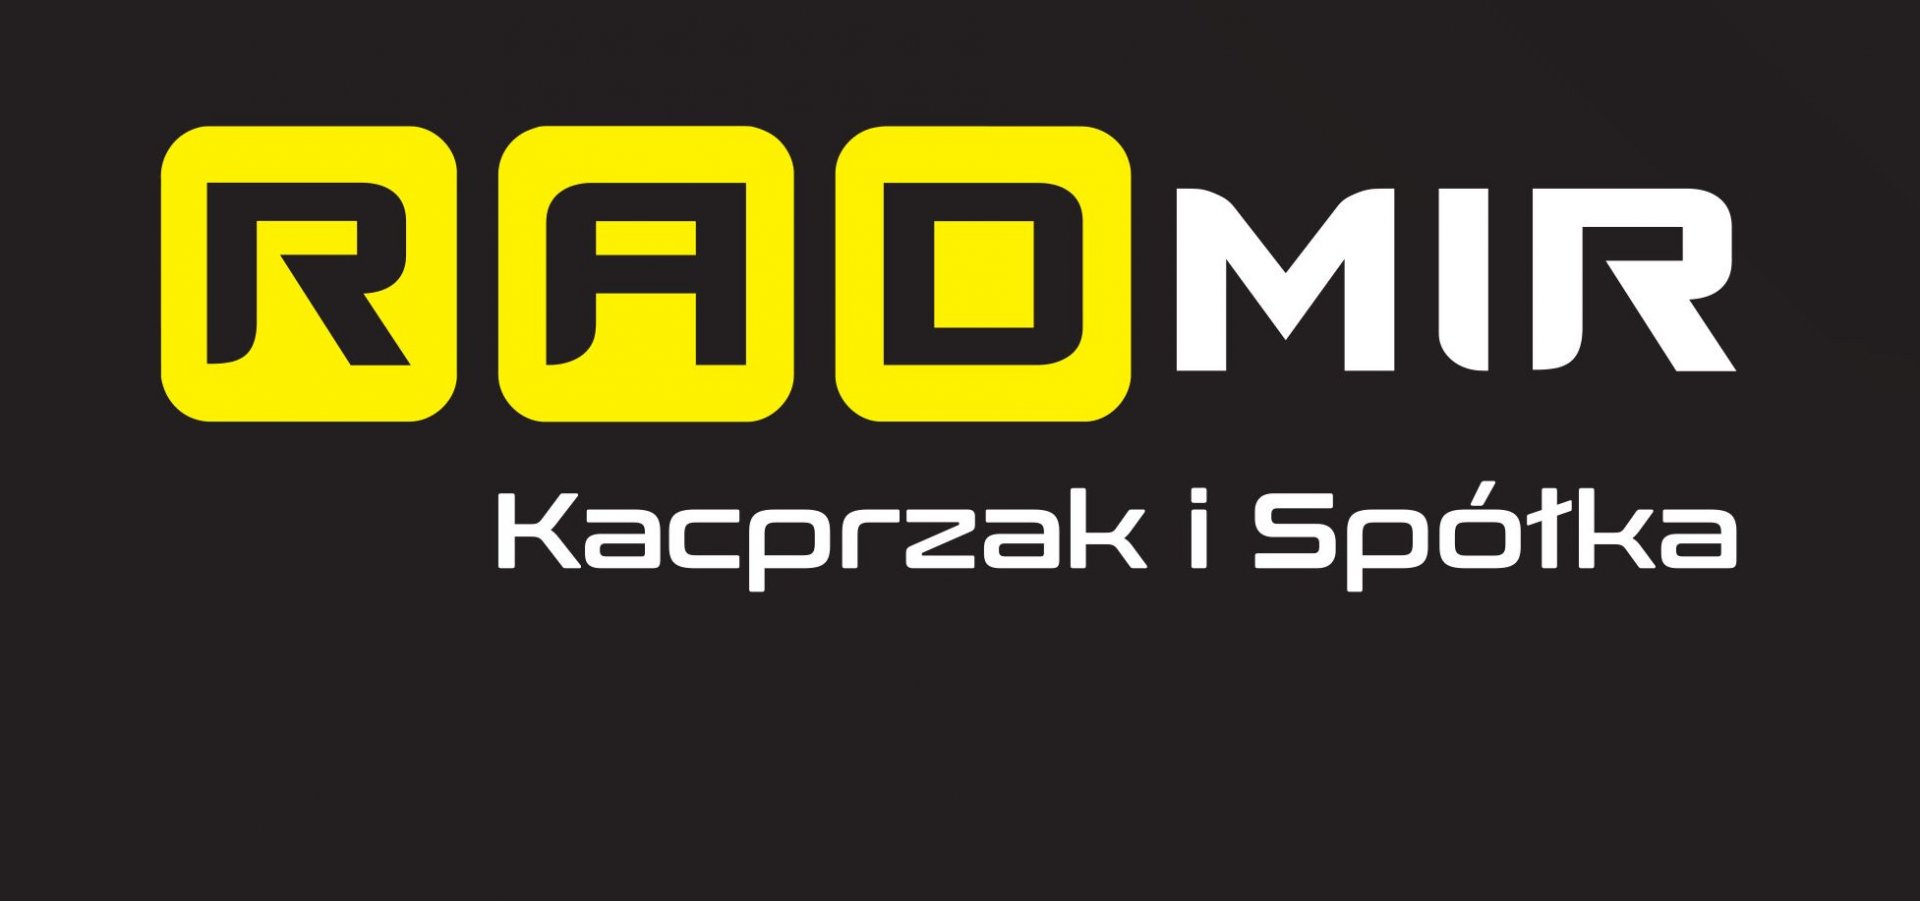 logo Radmir Kacprzak i Spółka